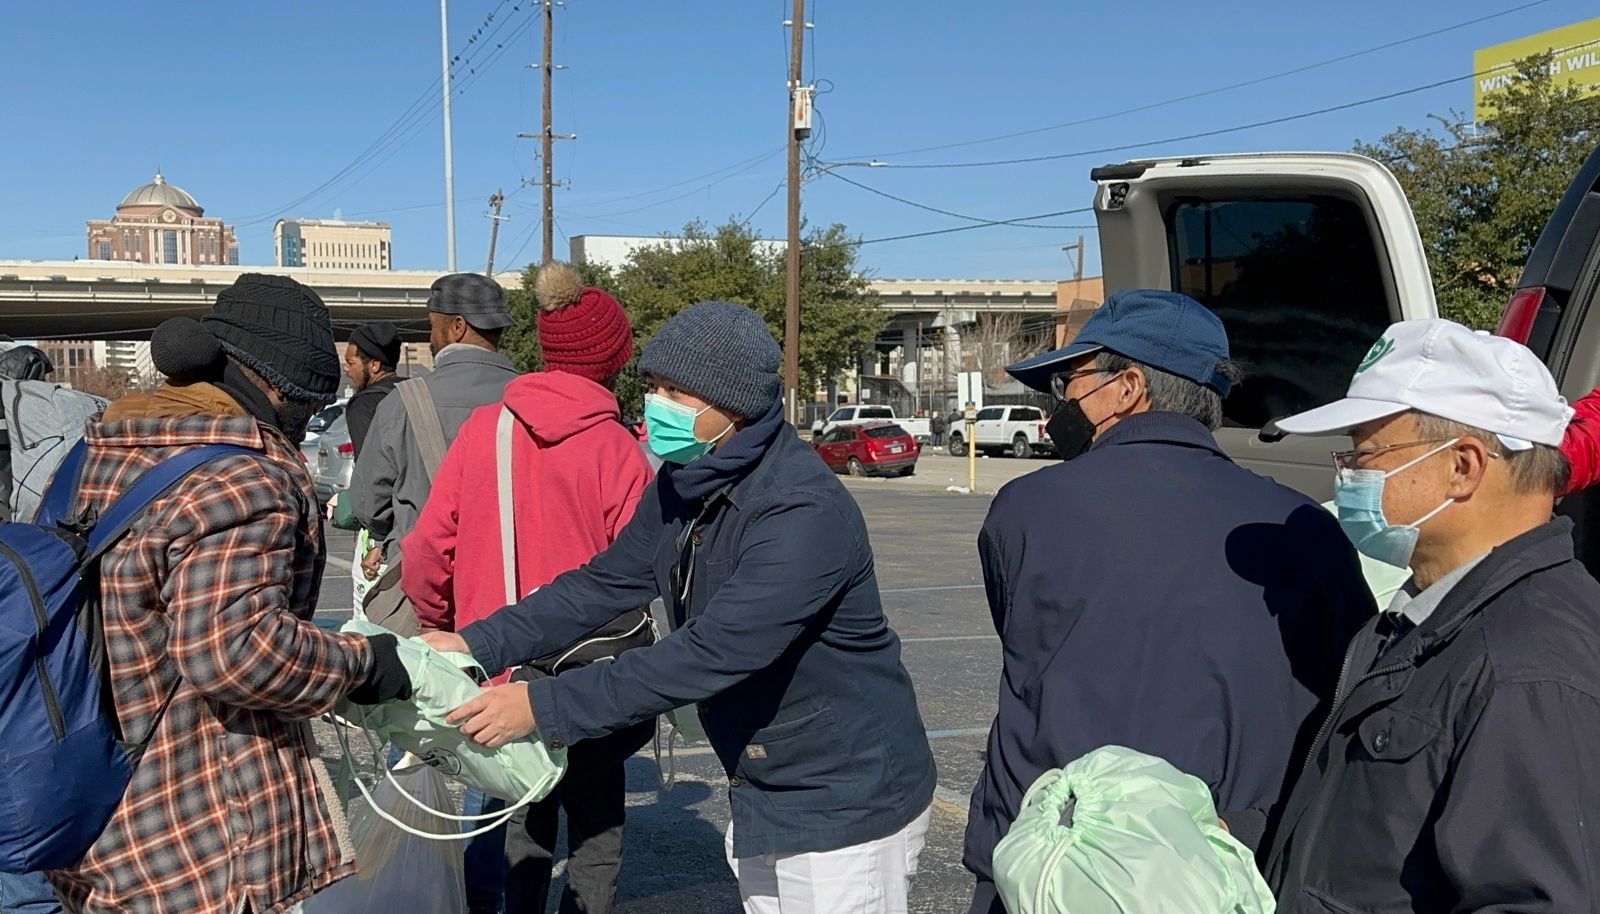 Voluntarios entregan respetuosamente mantas ecológicas y otros artículos para el frío. Foto/Eunice Pai